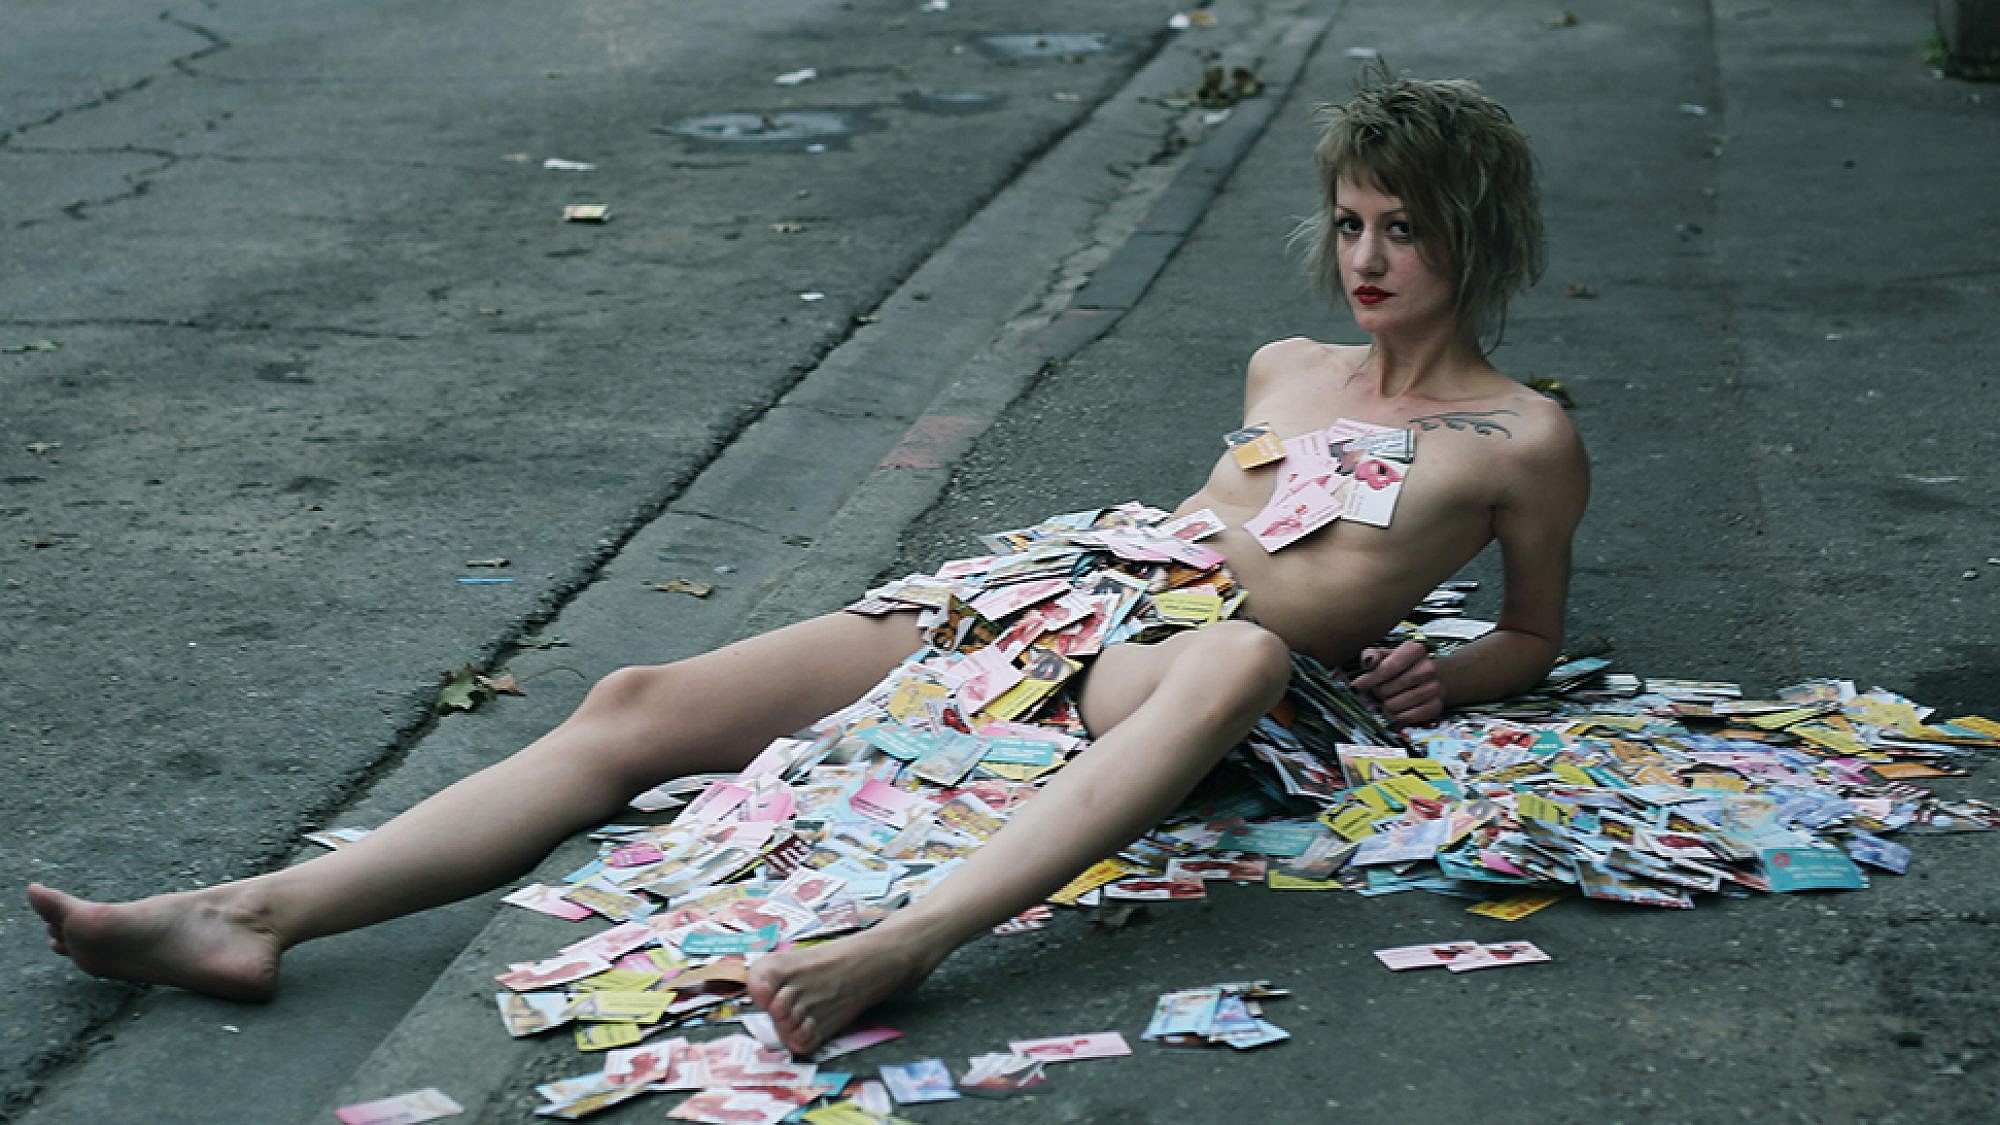 האמנית סשה קורבטוב מכוסה בכרטיסי ביקור של זנות | צילום: וננה בוריאן